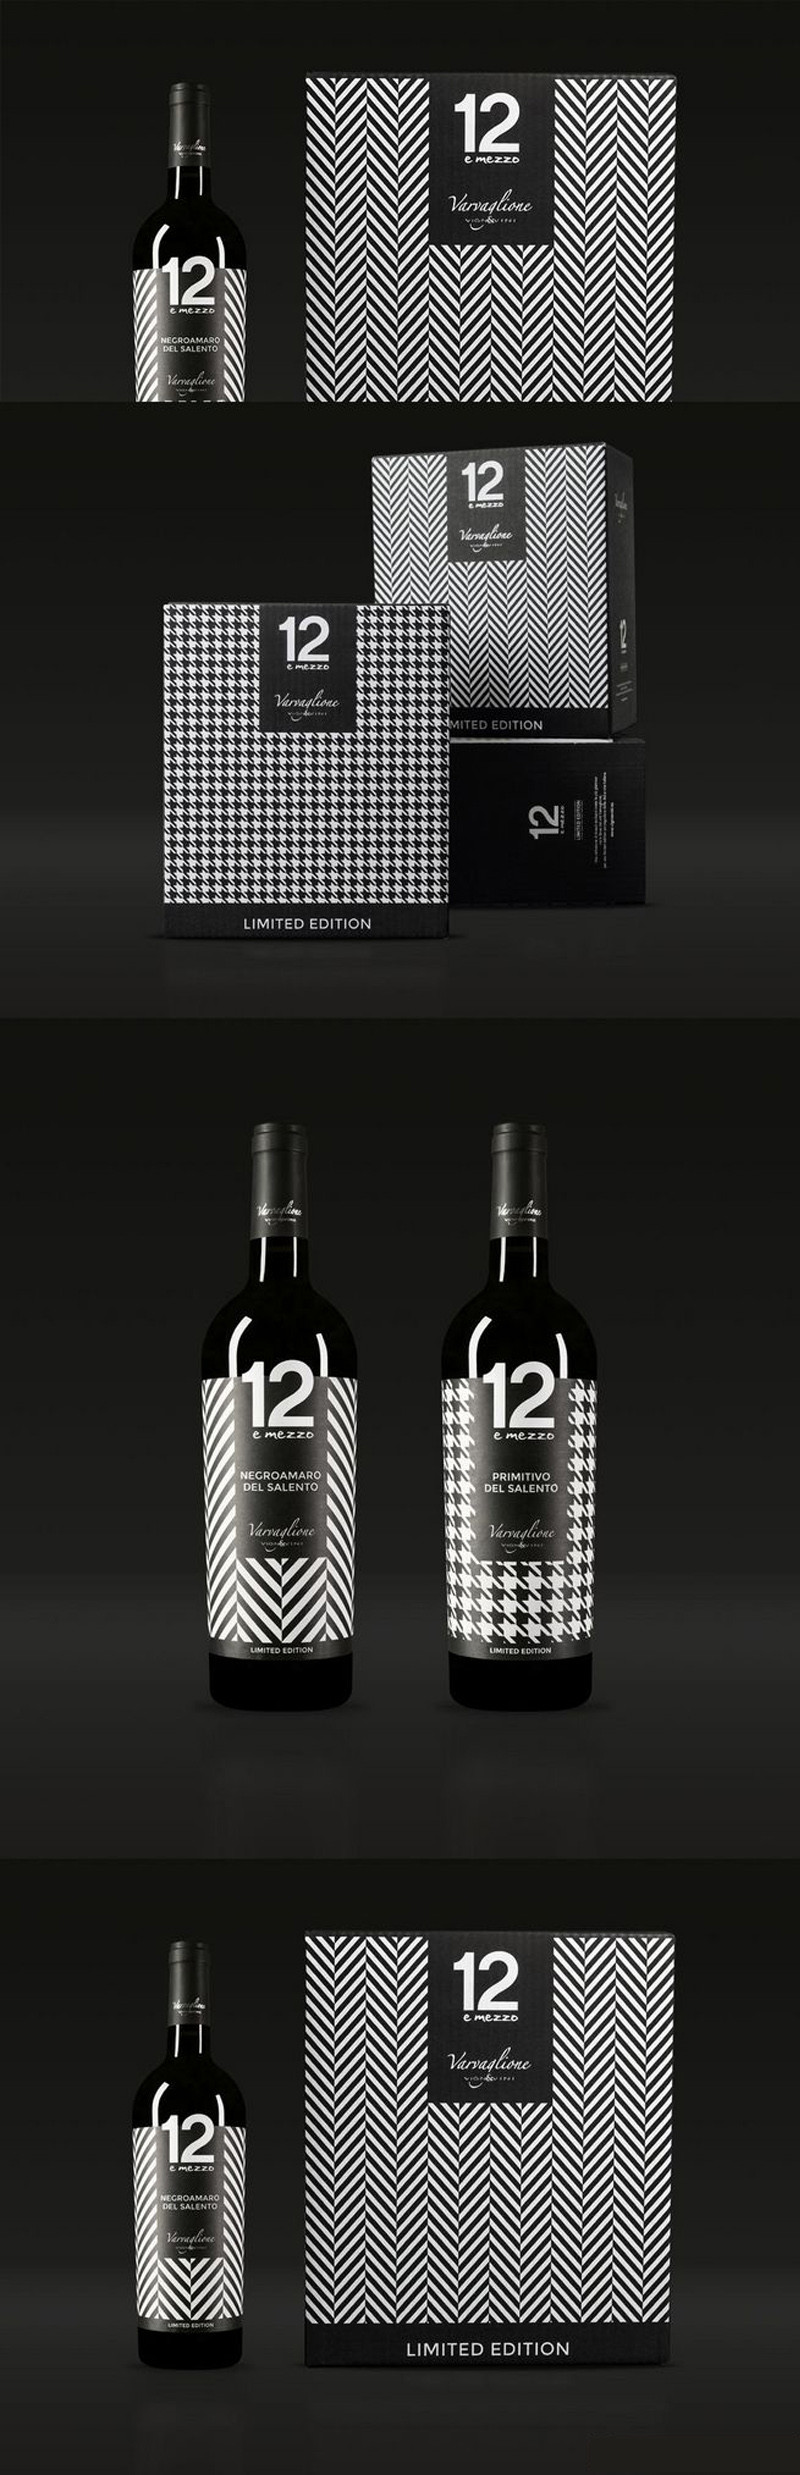 创意葡萄酒包装设计